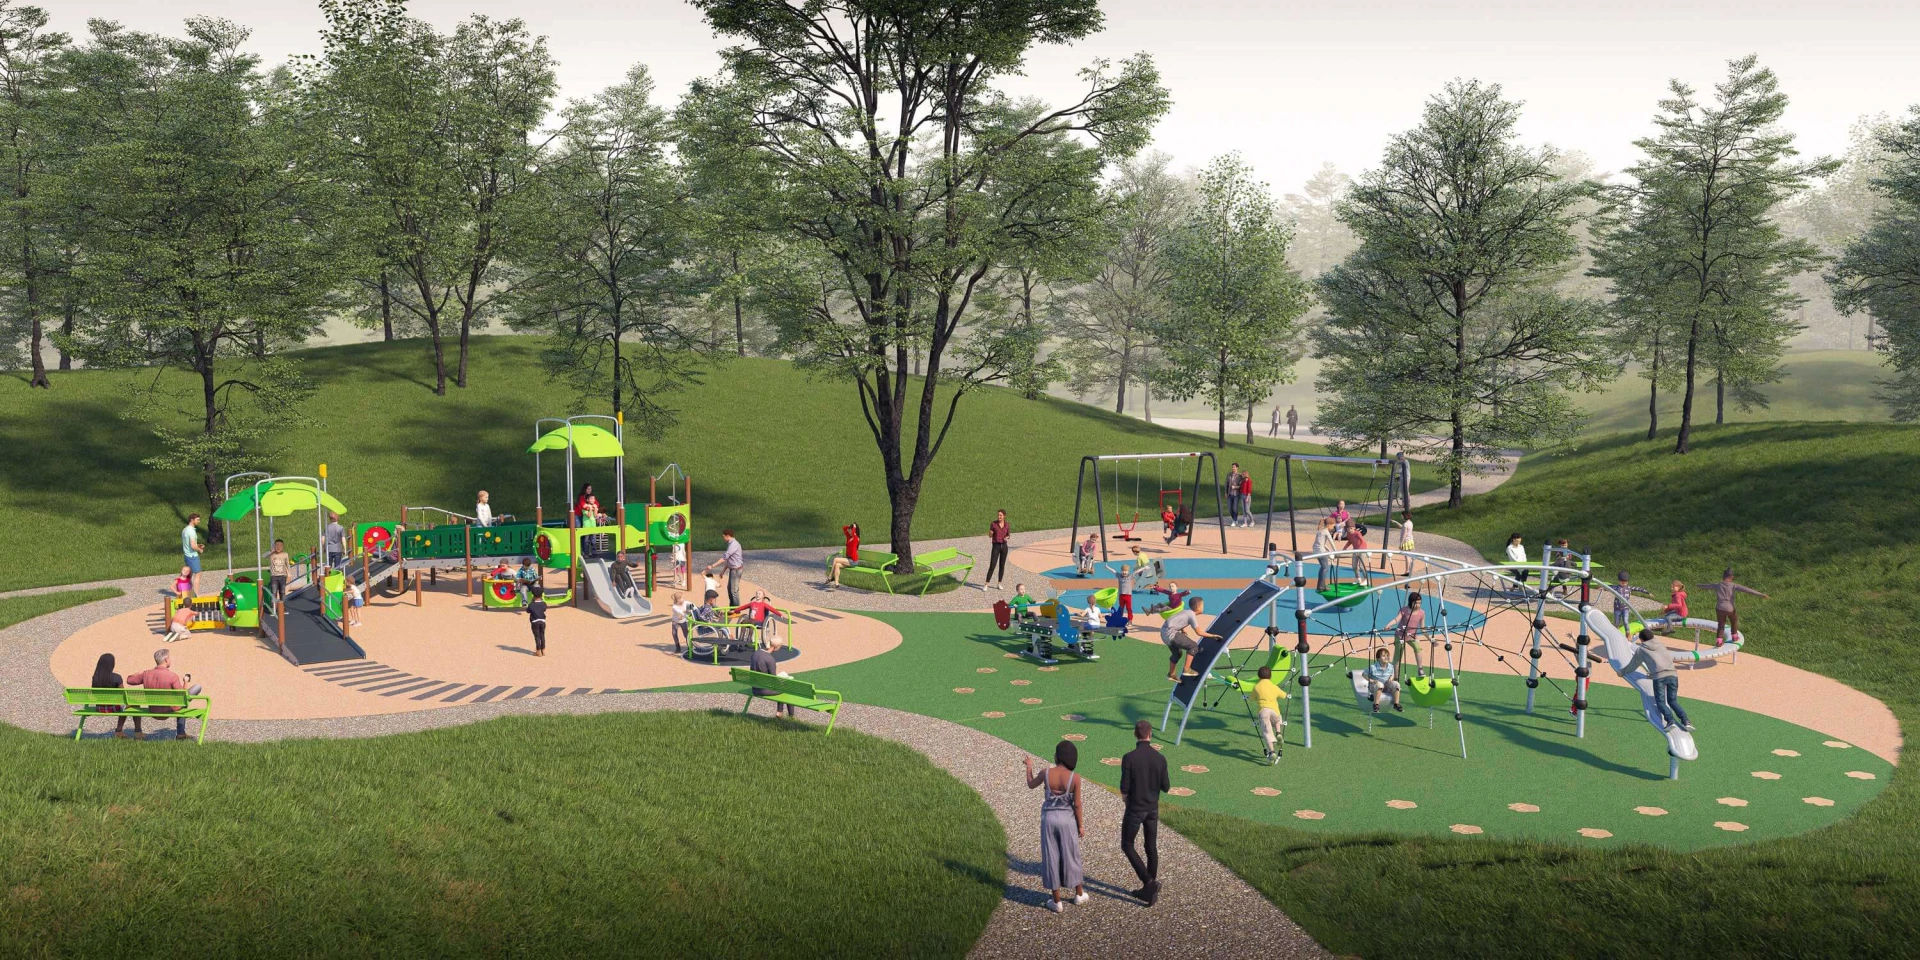 Design-Idee zum Bau eines inklusiven Spielplatzes in einem Park